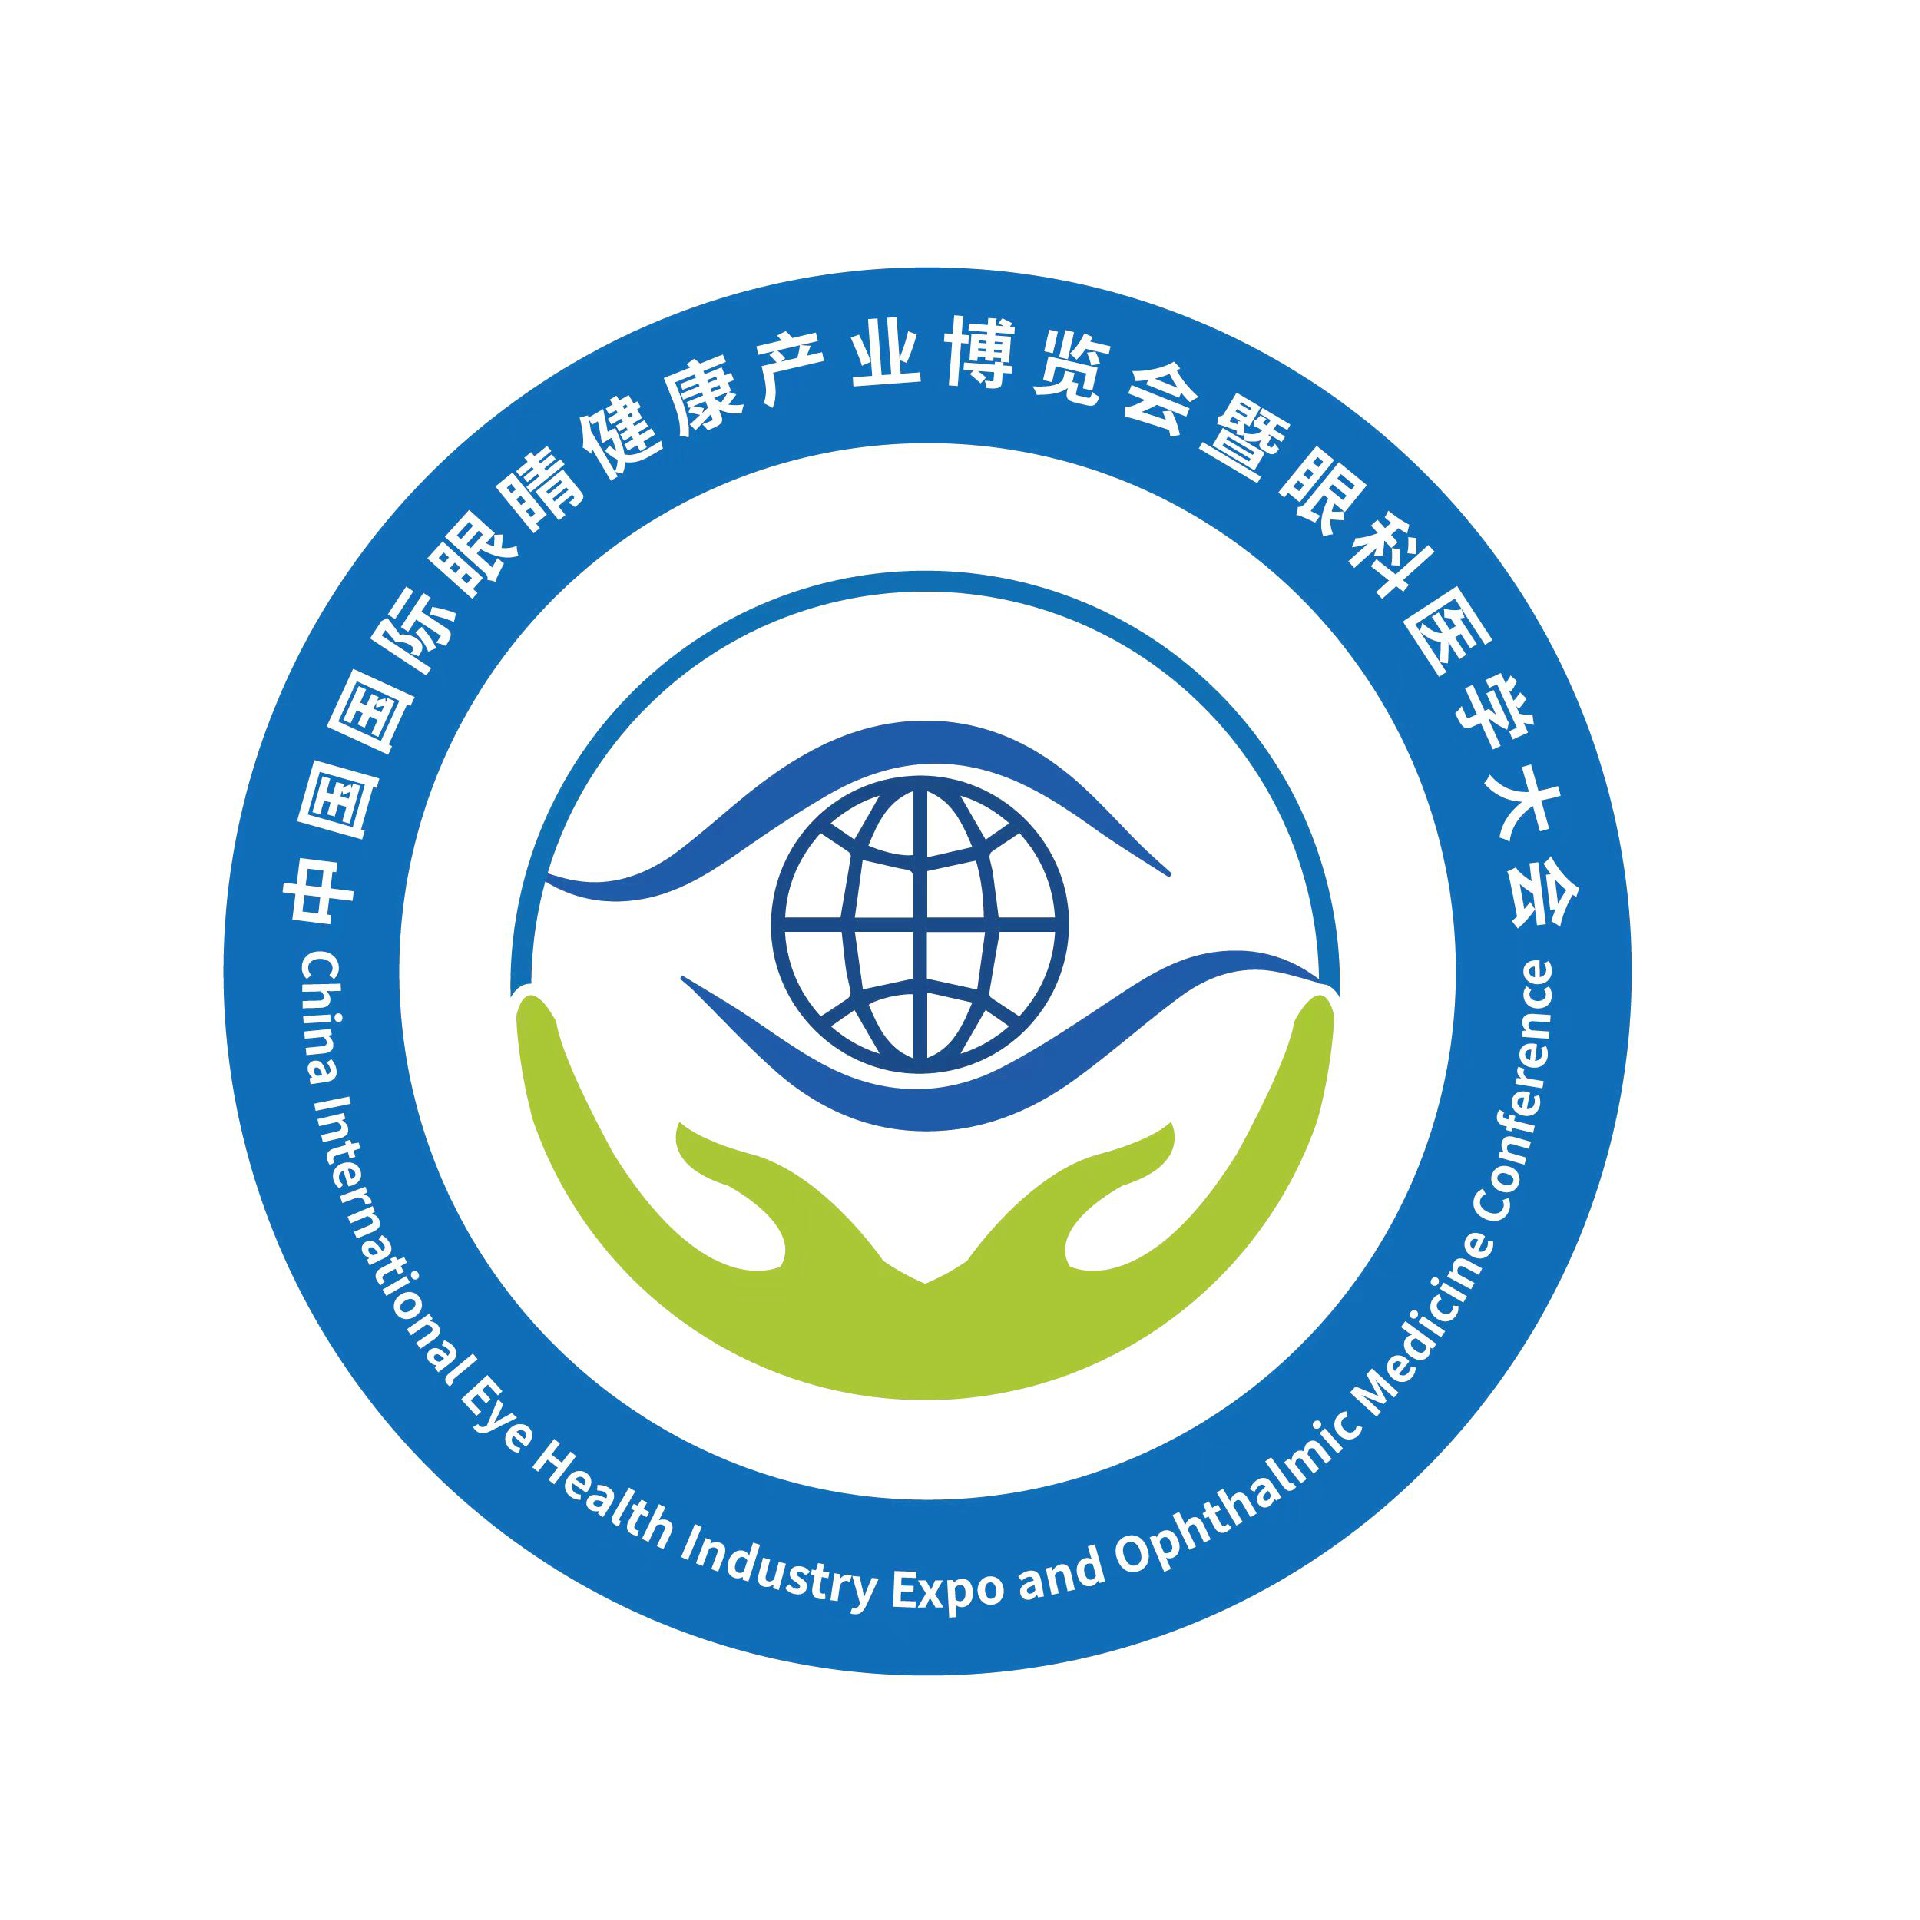 2025广州·全国眼睛健康产业博览会暨眼科医学大会